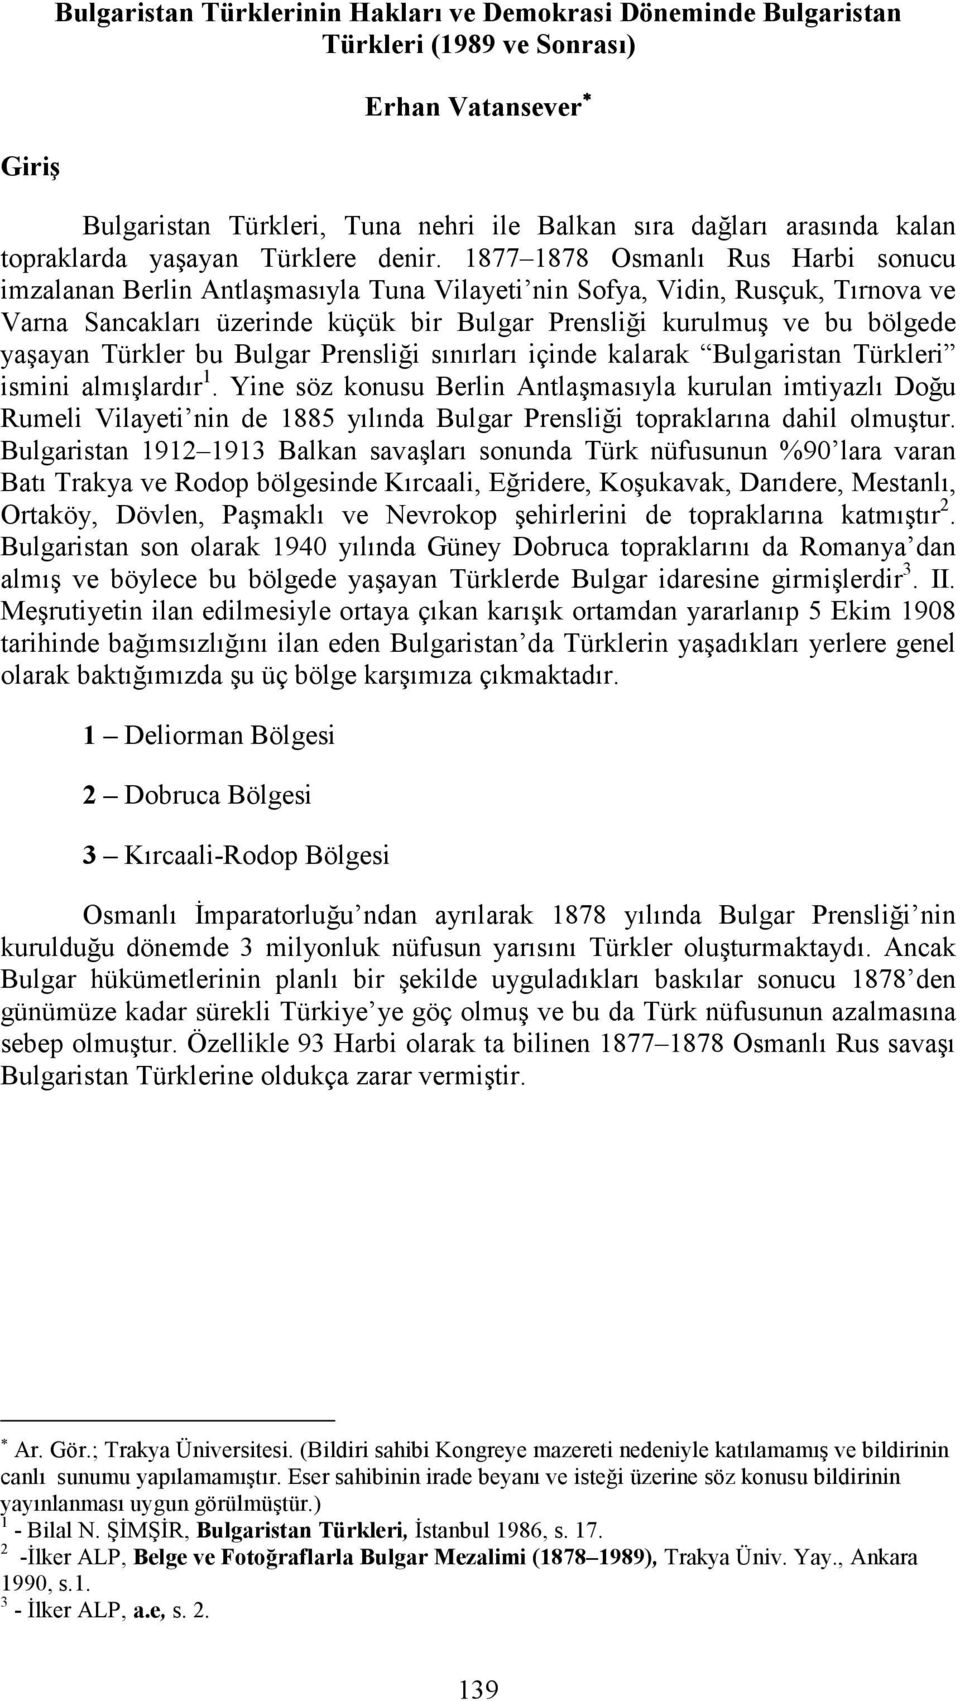 1877 1878 Osmanlı Rus Harbi sonucu imzalanan Berlin Antlaşmasıyla Tuna Vilayeti nin Sofya, Vidin, Rusçuk, Tırnova ve Varna Sancakları üzerinde küçük bir Bulgar Prensliği kurulmuş ve bu bölgede